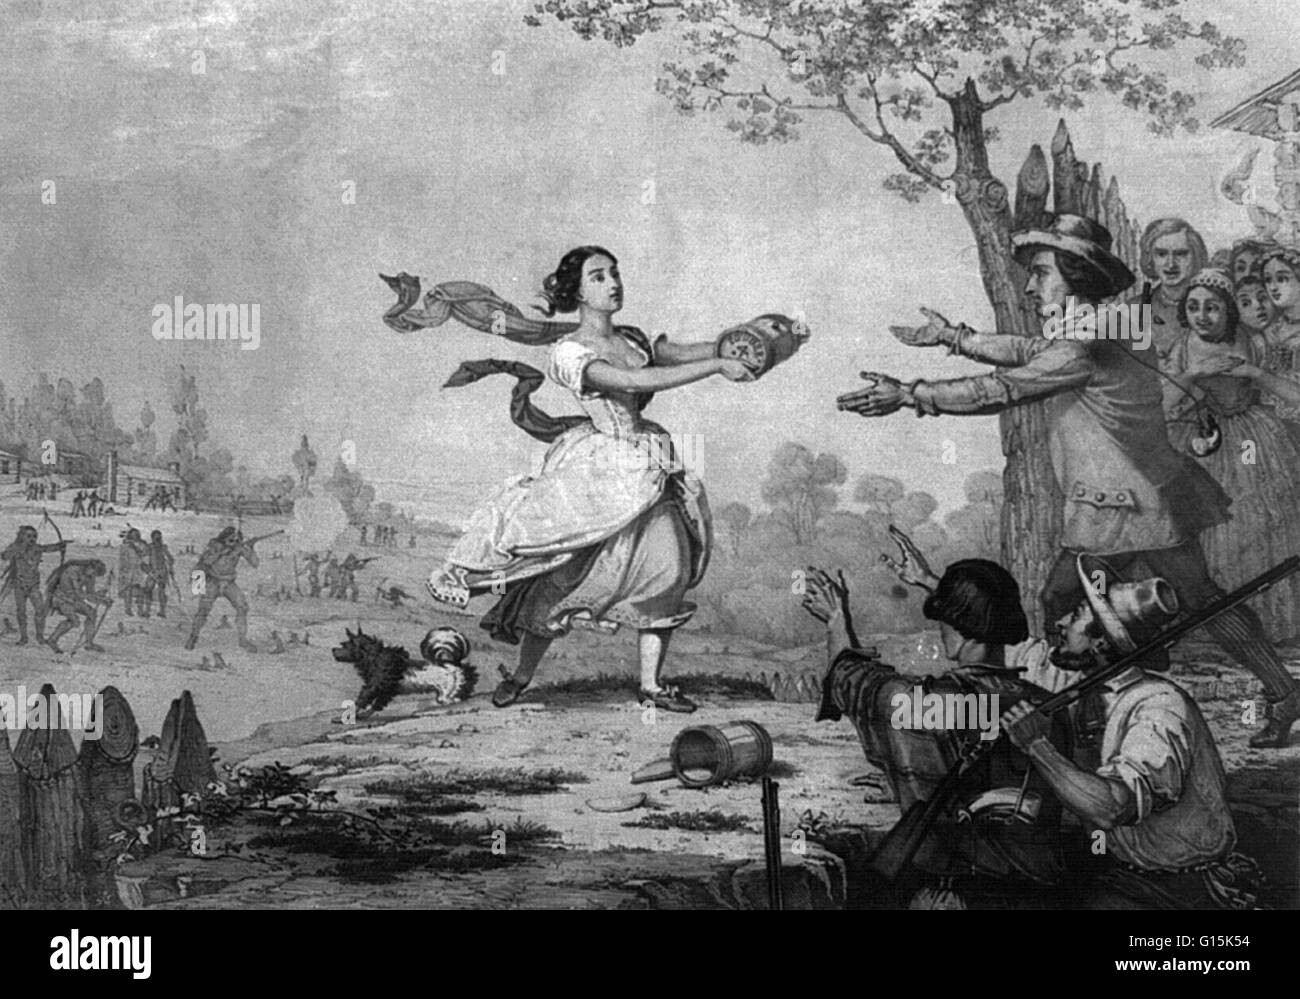 Elizabeth 'Betty' Zane McLaughlin Clark (1759-1823) est une héroïne de la guerre révolutionnaire. En vertu de l'attaque de la British-alliés amérindiens pendant le siège de Fort Henry pendant la guerre d'indépendance, il y avait une pénurie de poudre. Avec pas d'hommes ou ti Banque D'Images